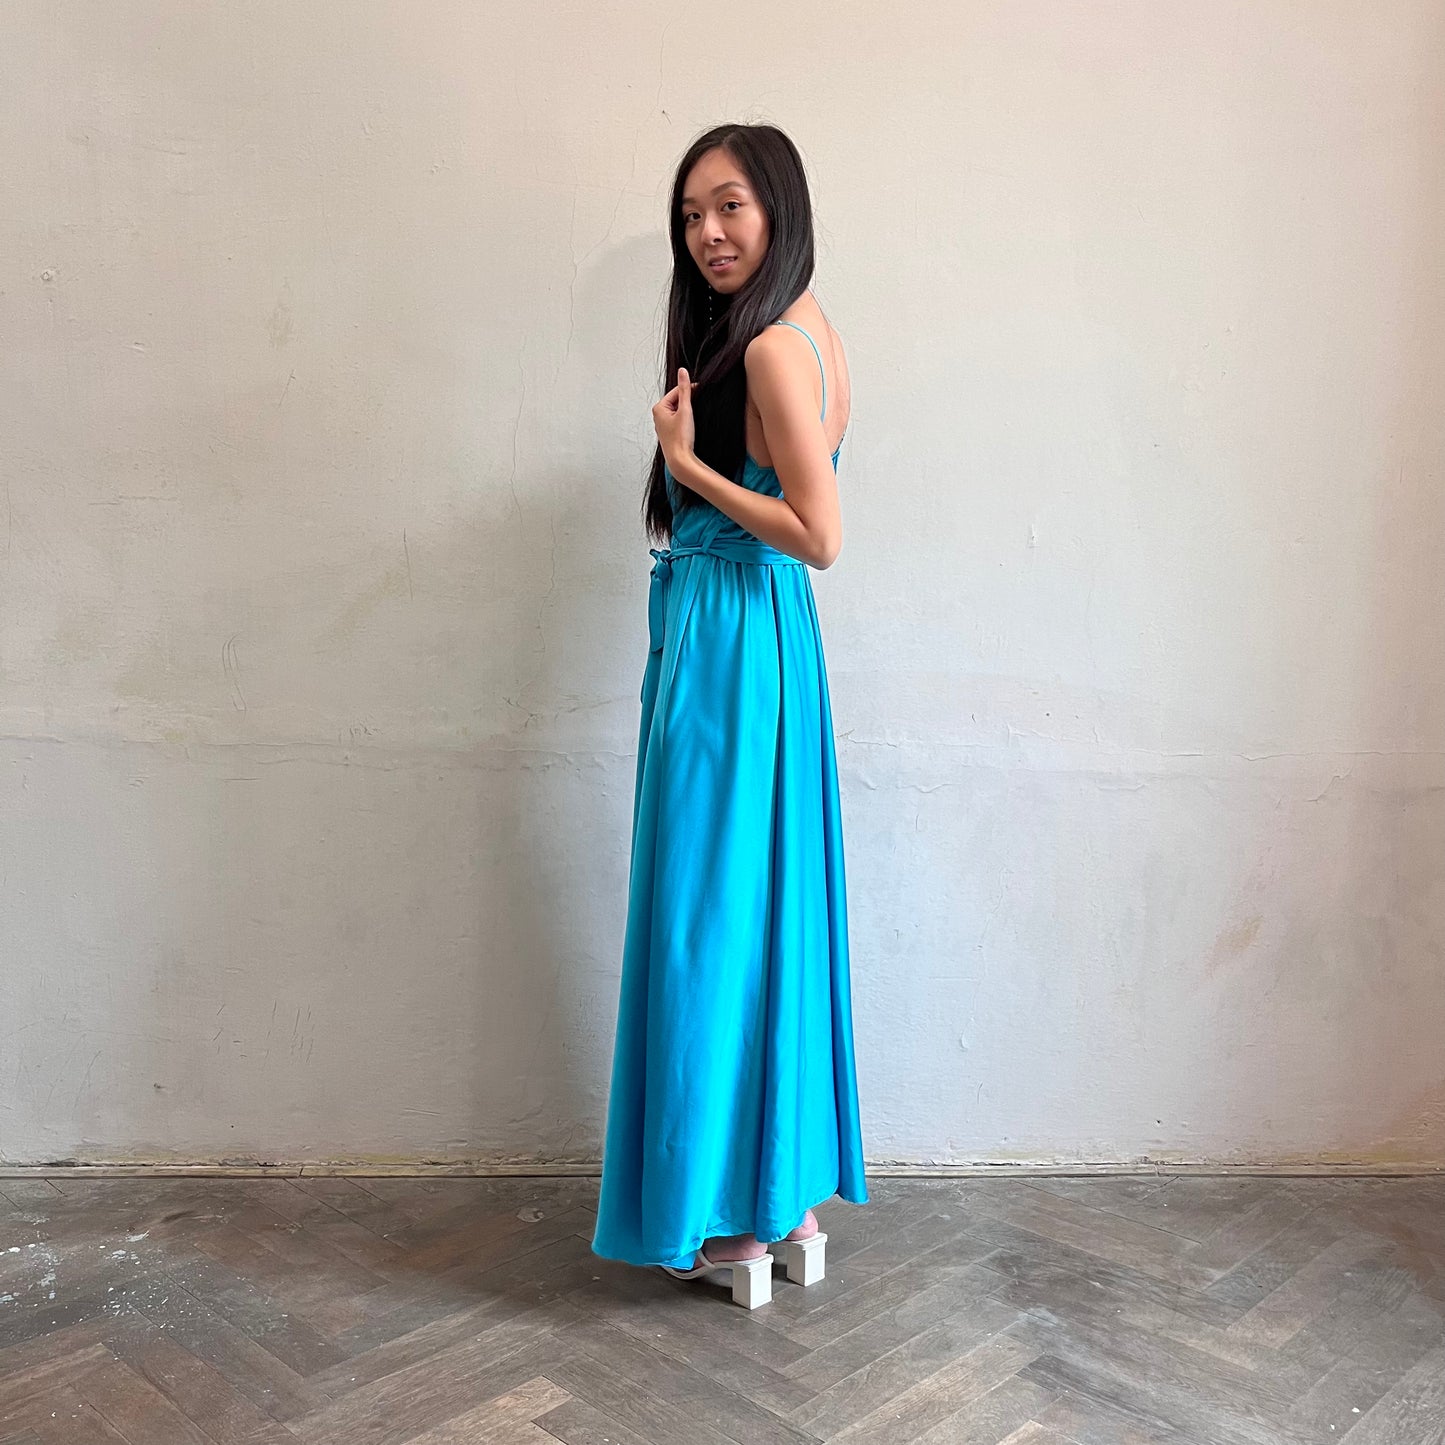 Modelka asijského původu pózující z boku oblečená v tyrkysových společenských šatech s rozparkem